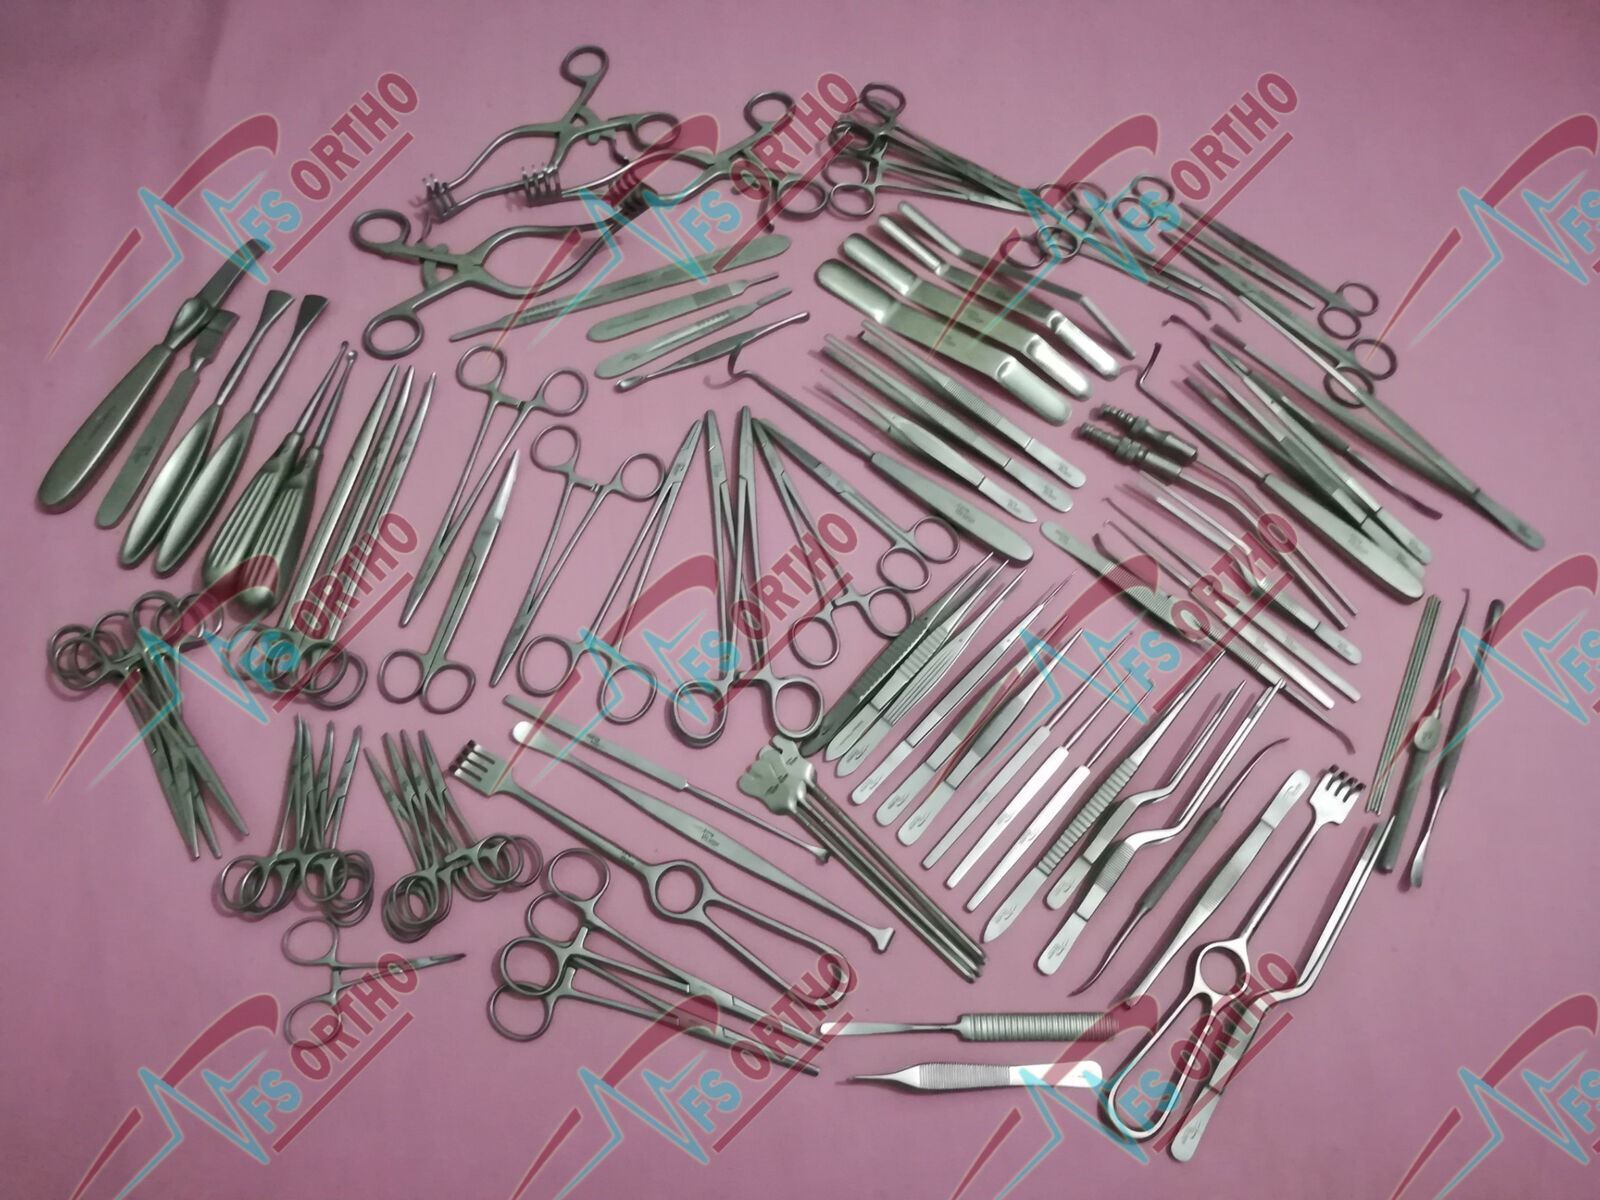 Basic Neurosurgery Set of 96 Pcs NeuroSurgical Orthopedic Instruments Full SET